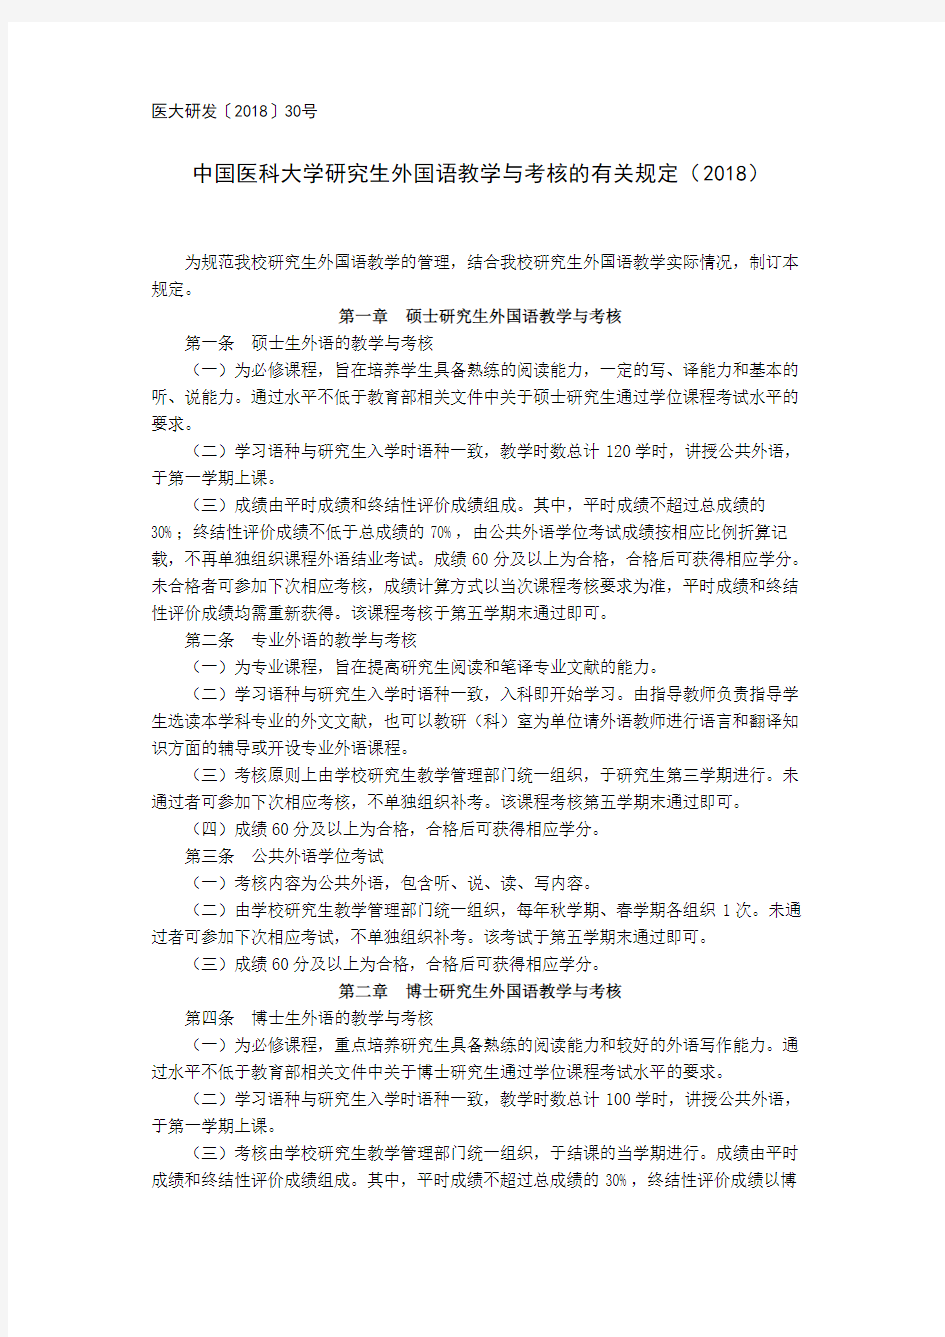 中国医科大学研究生外国语教学与考核的有关规定(2018)